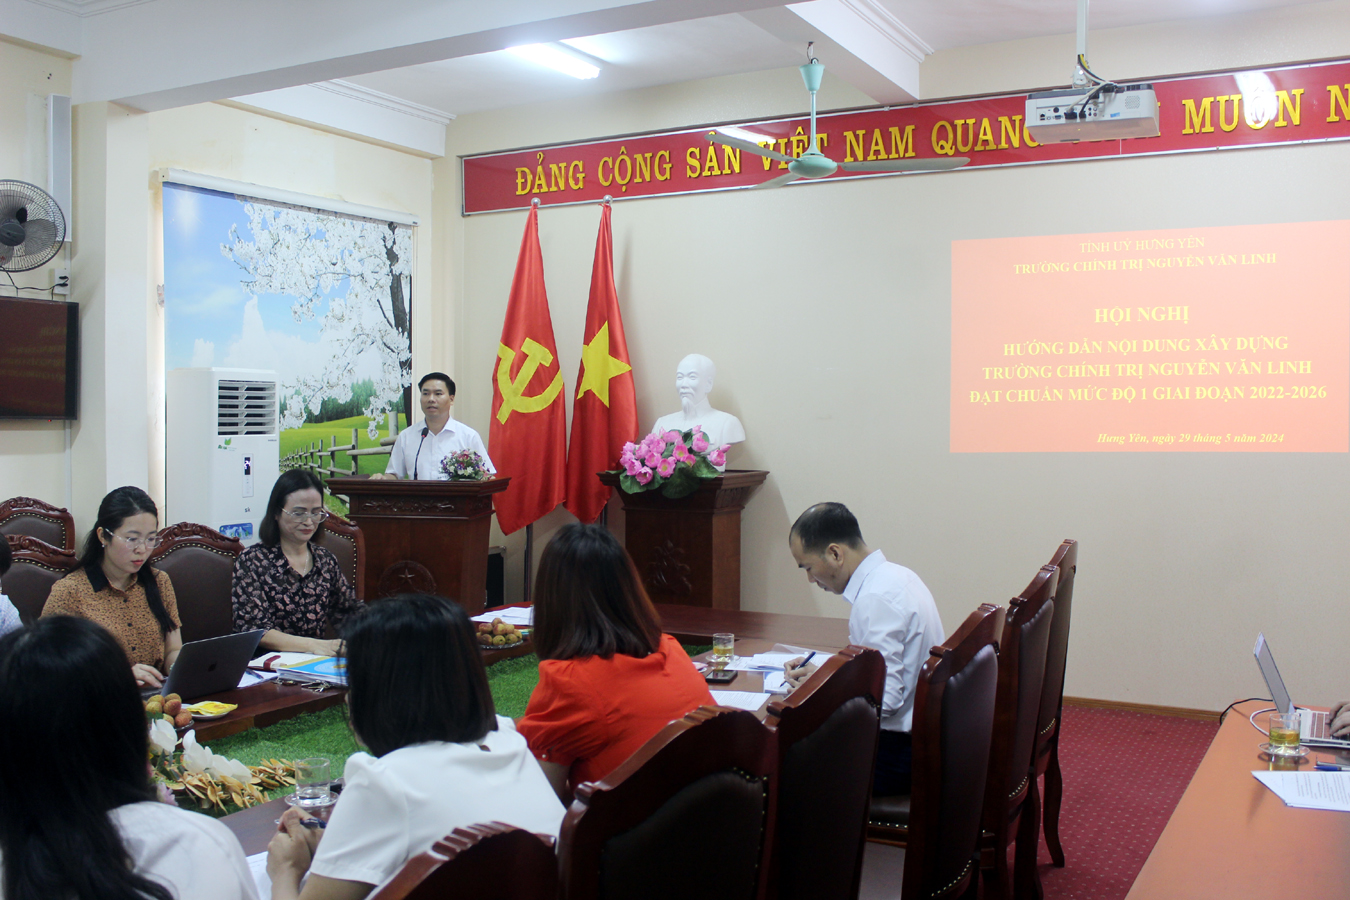 Hội nghị hướng dẫn xây dựng Trường Chính trị  Nguyễn Văn Linh đạt chuẩn mức độ 1 giai đoạn 2022-2026